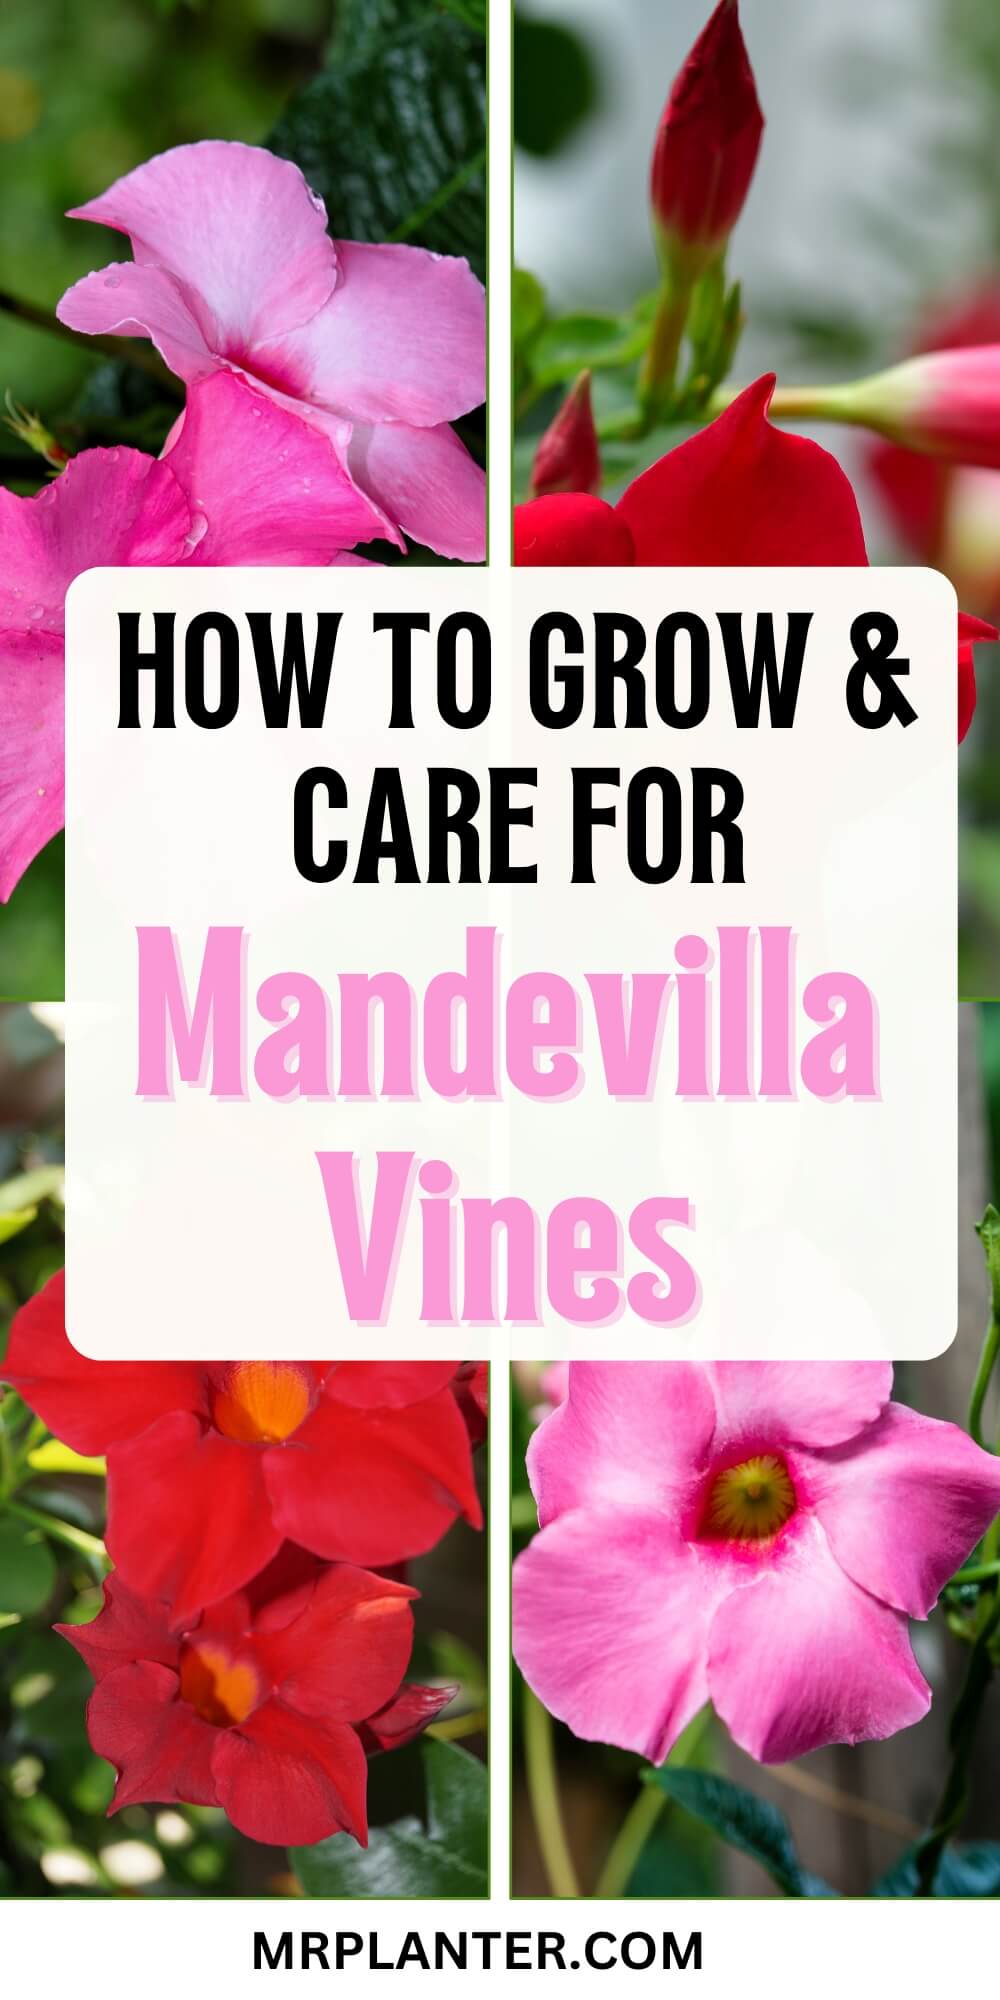 Mandevilla Vines Care